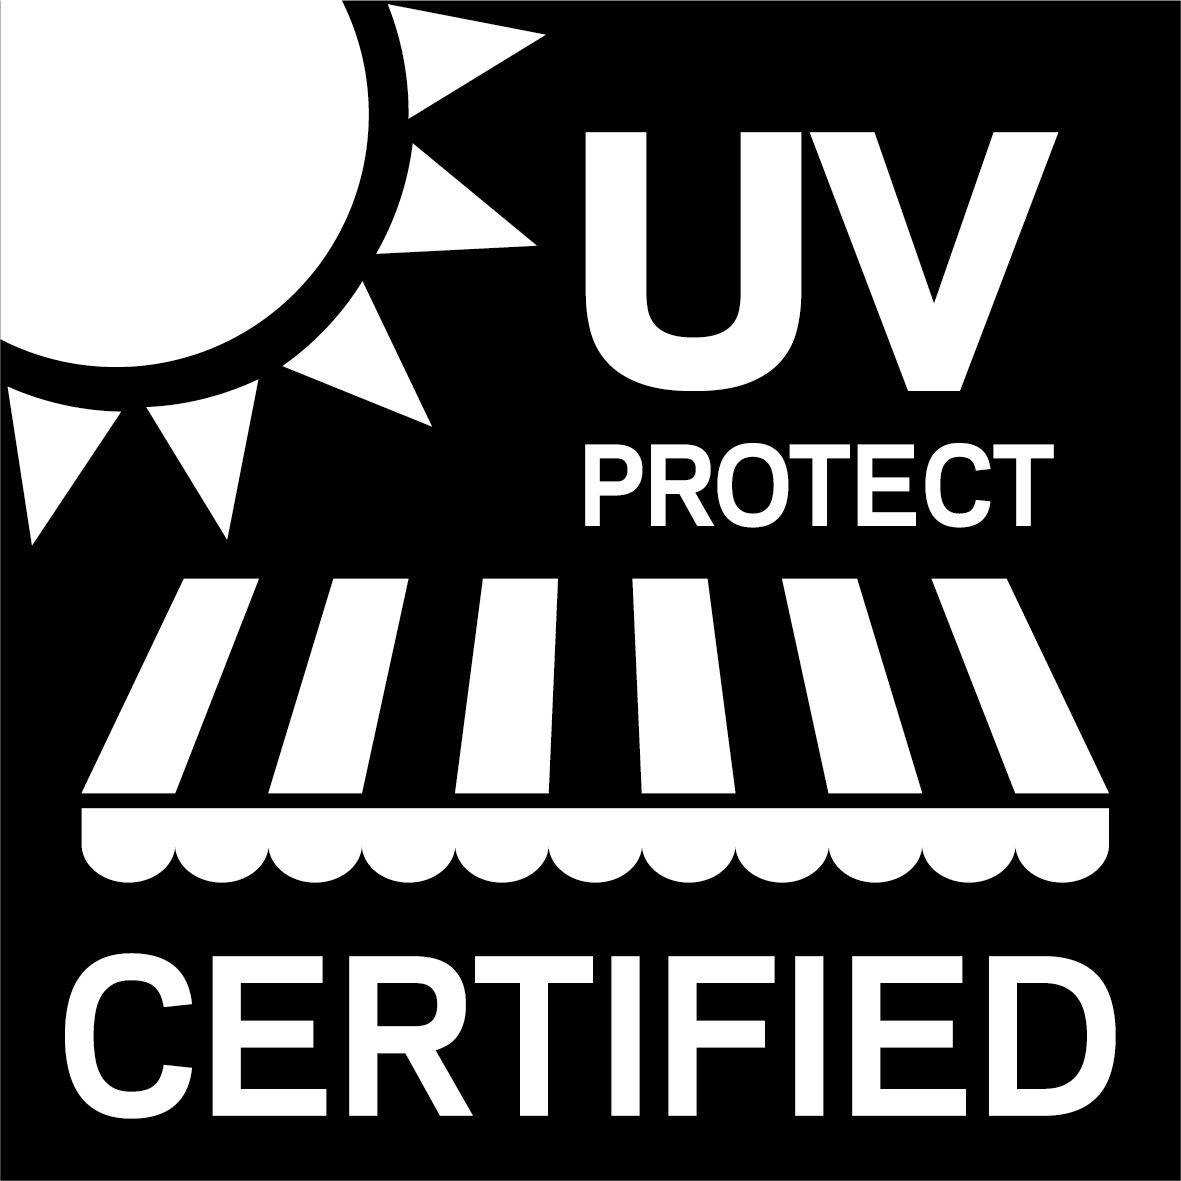 Alle Sattler-Stoffe werden den strengsten UV-Prüfkriterien unterworfen, um Ihren Schutz zu garantieren.